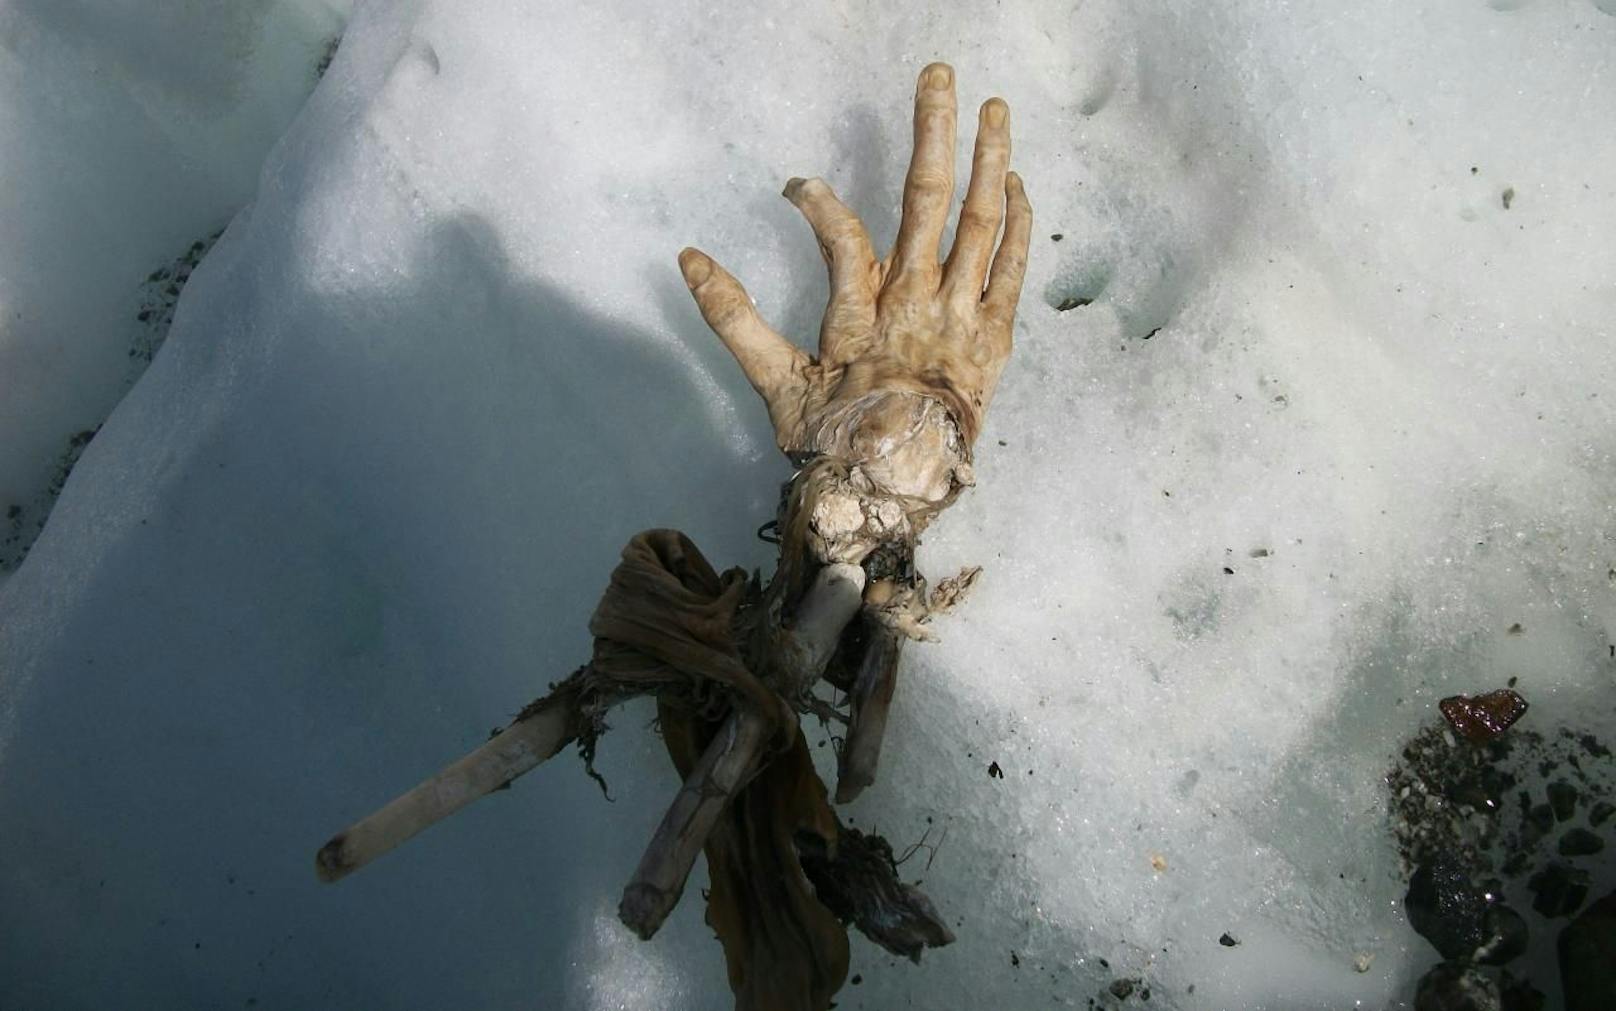 Ein Bergsteiger fand die mumifizierte Hand am Mont Blanc. Wahrscheinlich handelt es sich um Überreste eines Flugzeugabsturzes.